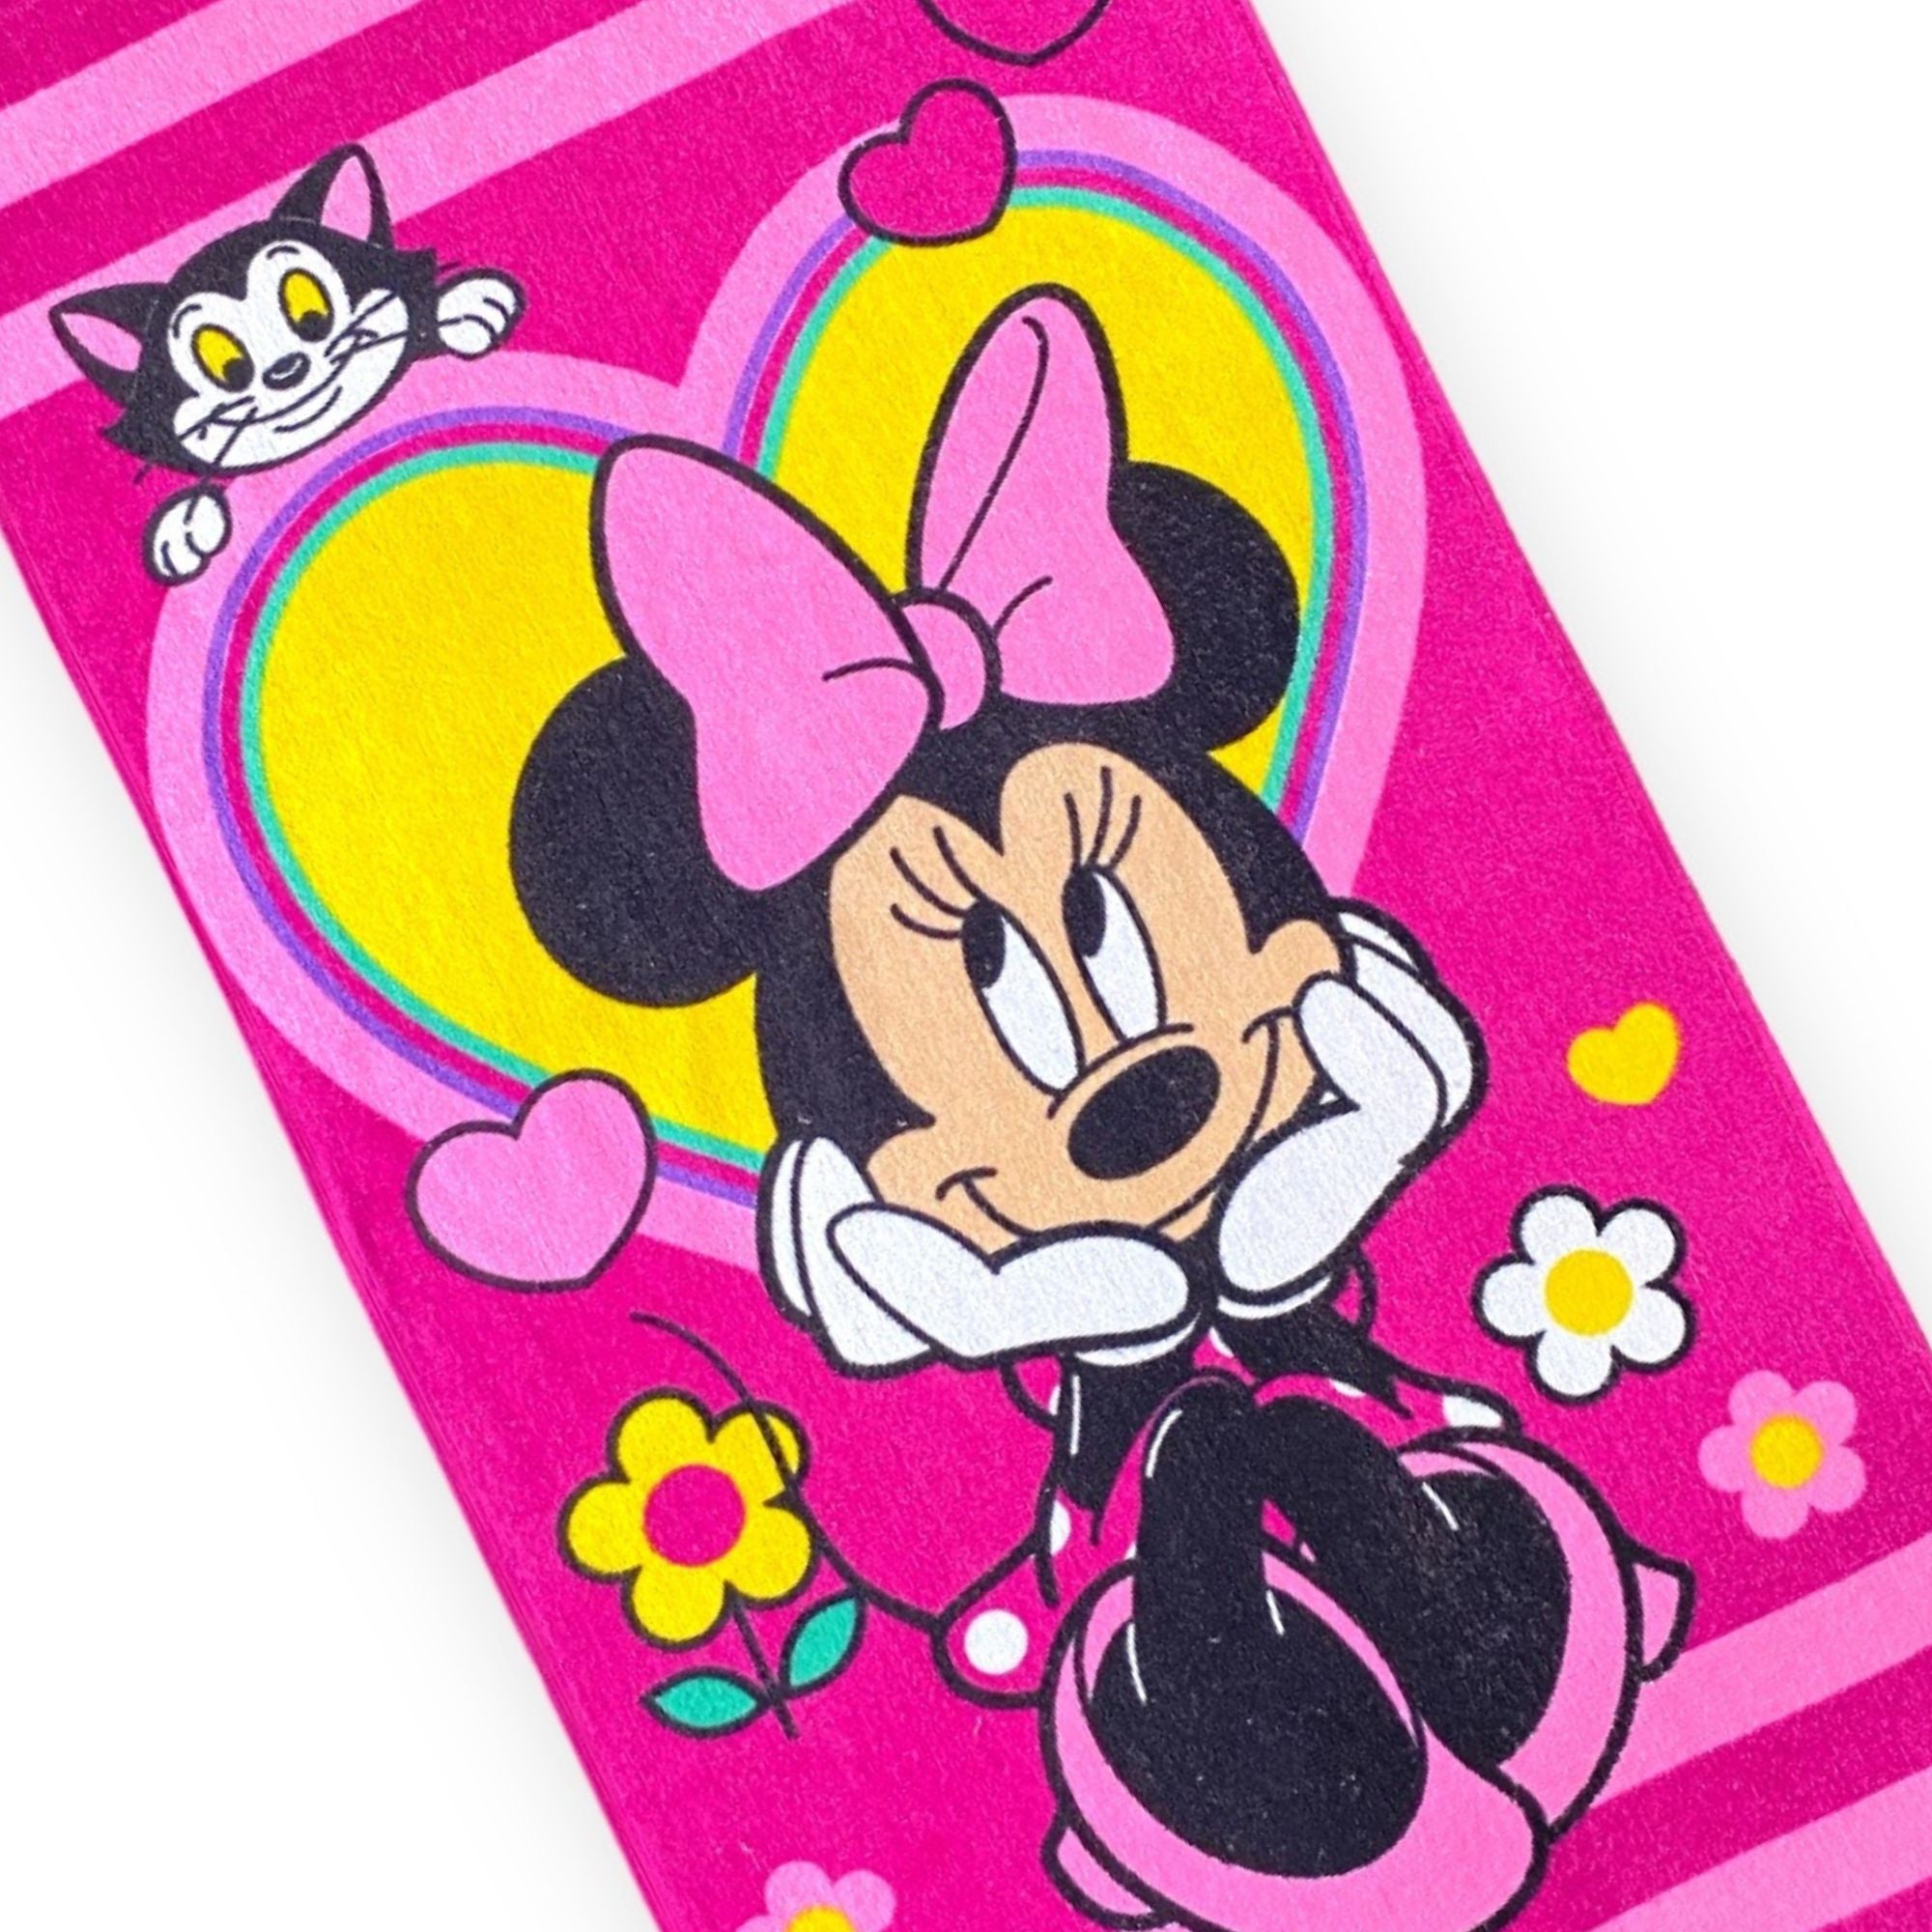 Toalla oficial de Minnie Mouse.